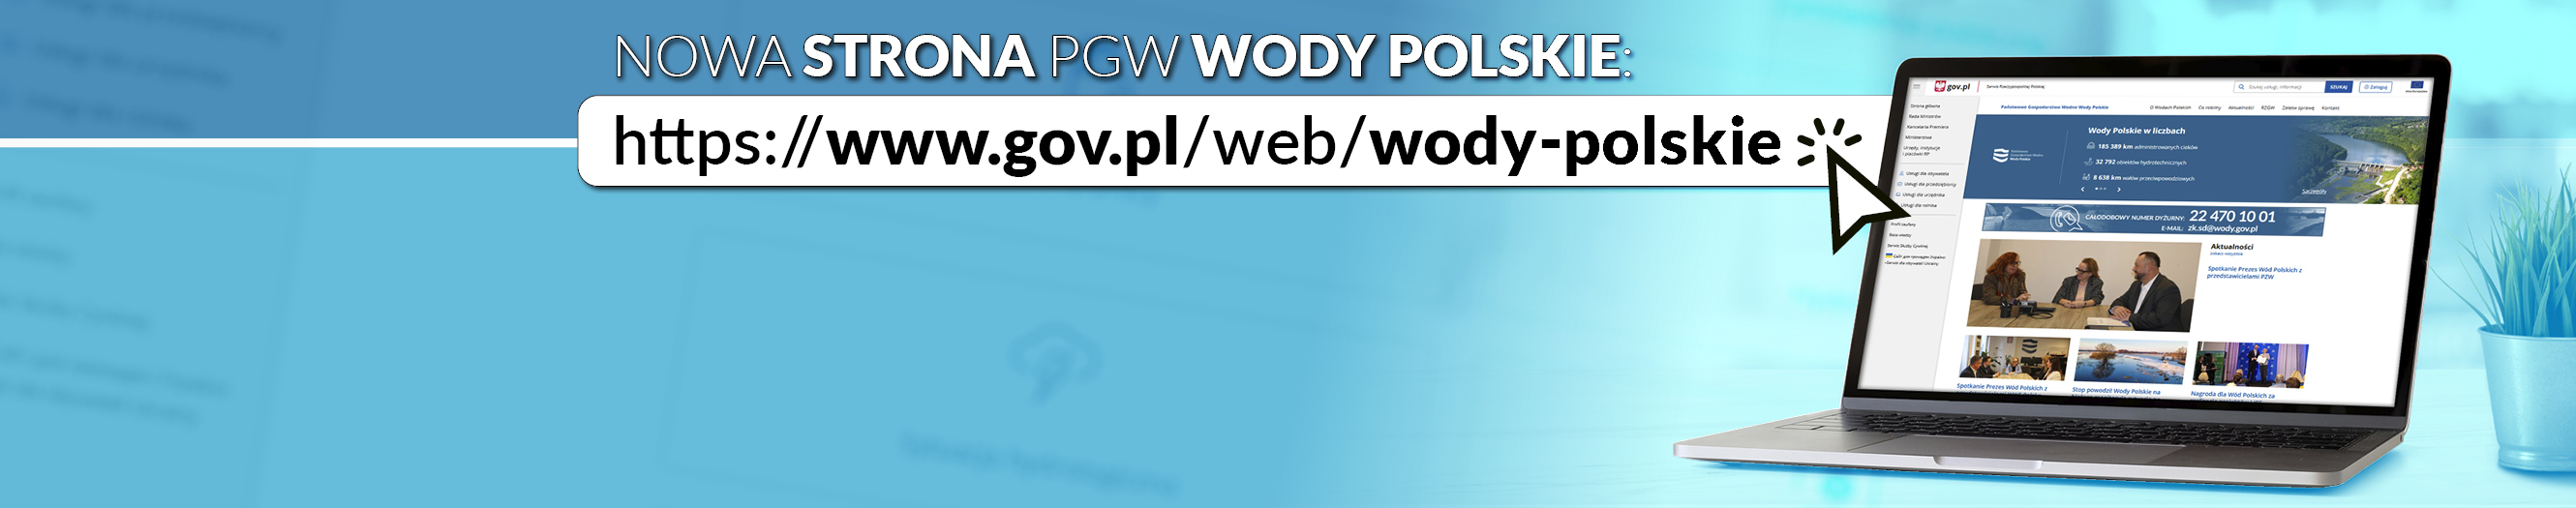 Nowa strona internetowa PGW WODY POLSKIE